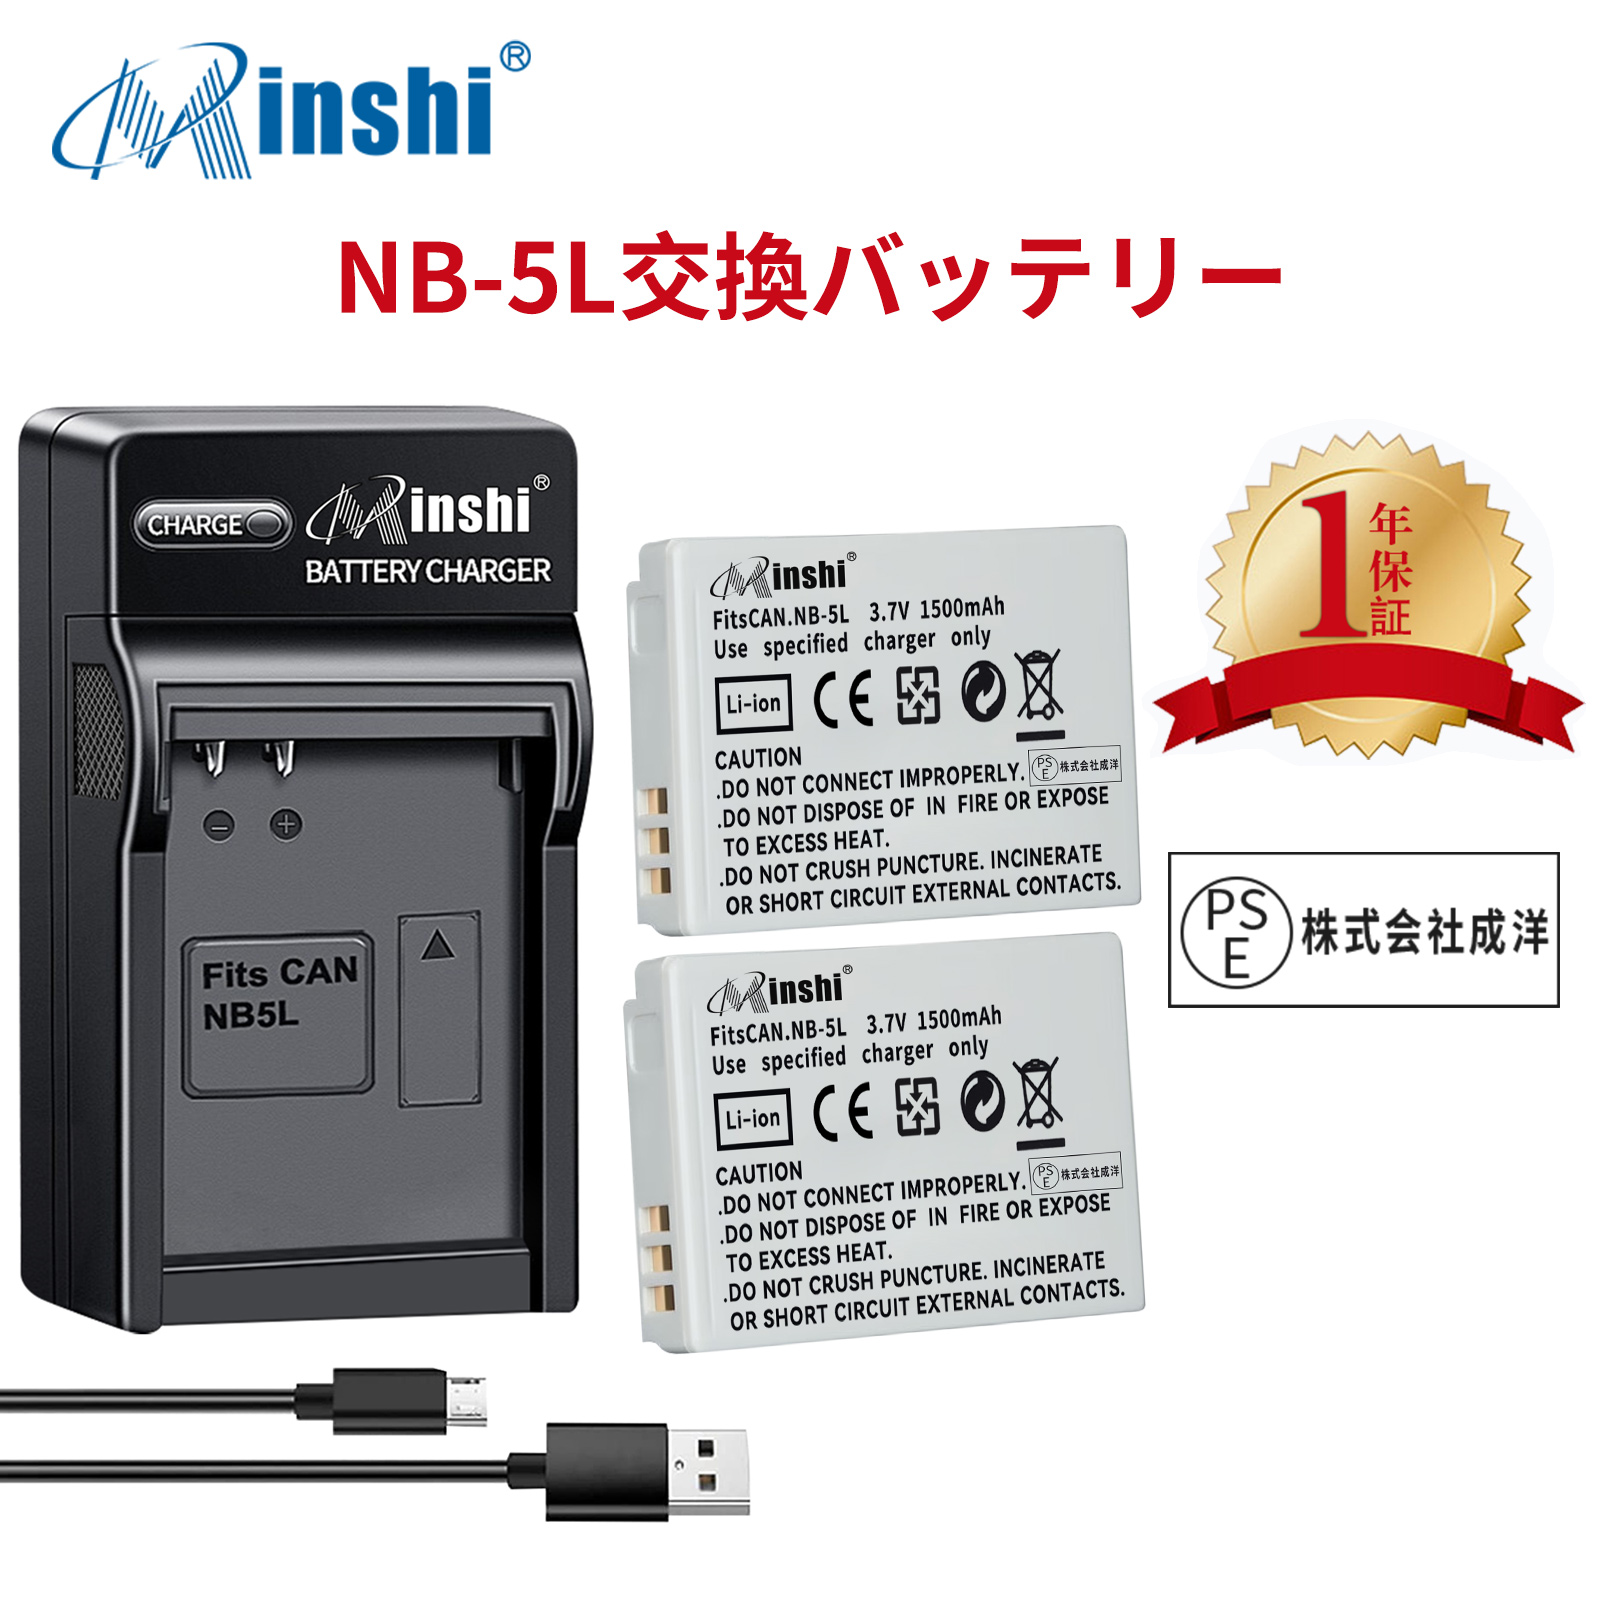 【２個セット】minshi CANON 910IS NB-5L【1500mAh 3.7V】【互換急速USBチャージャー】 高品質交換用バッテリー